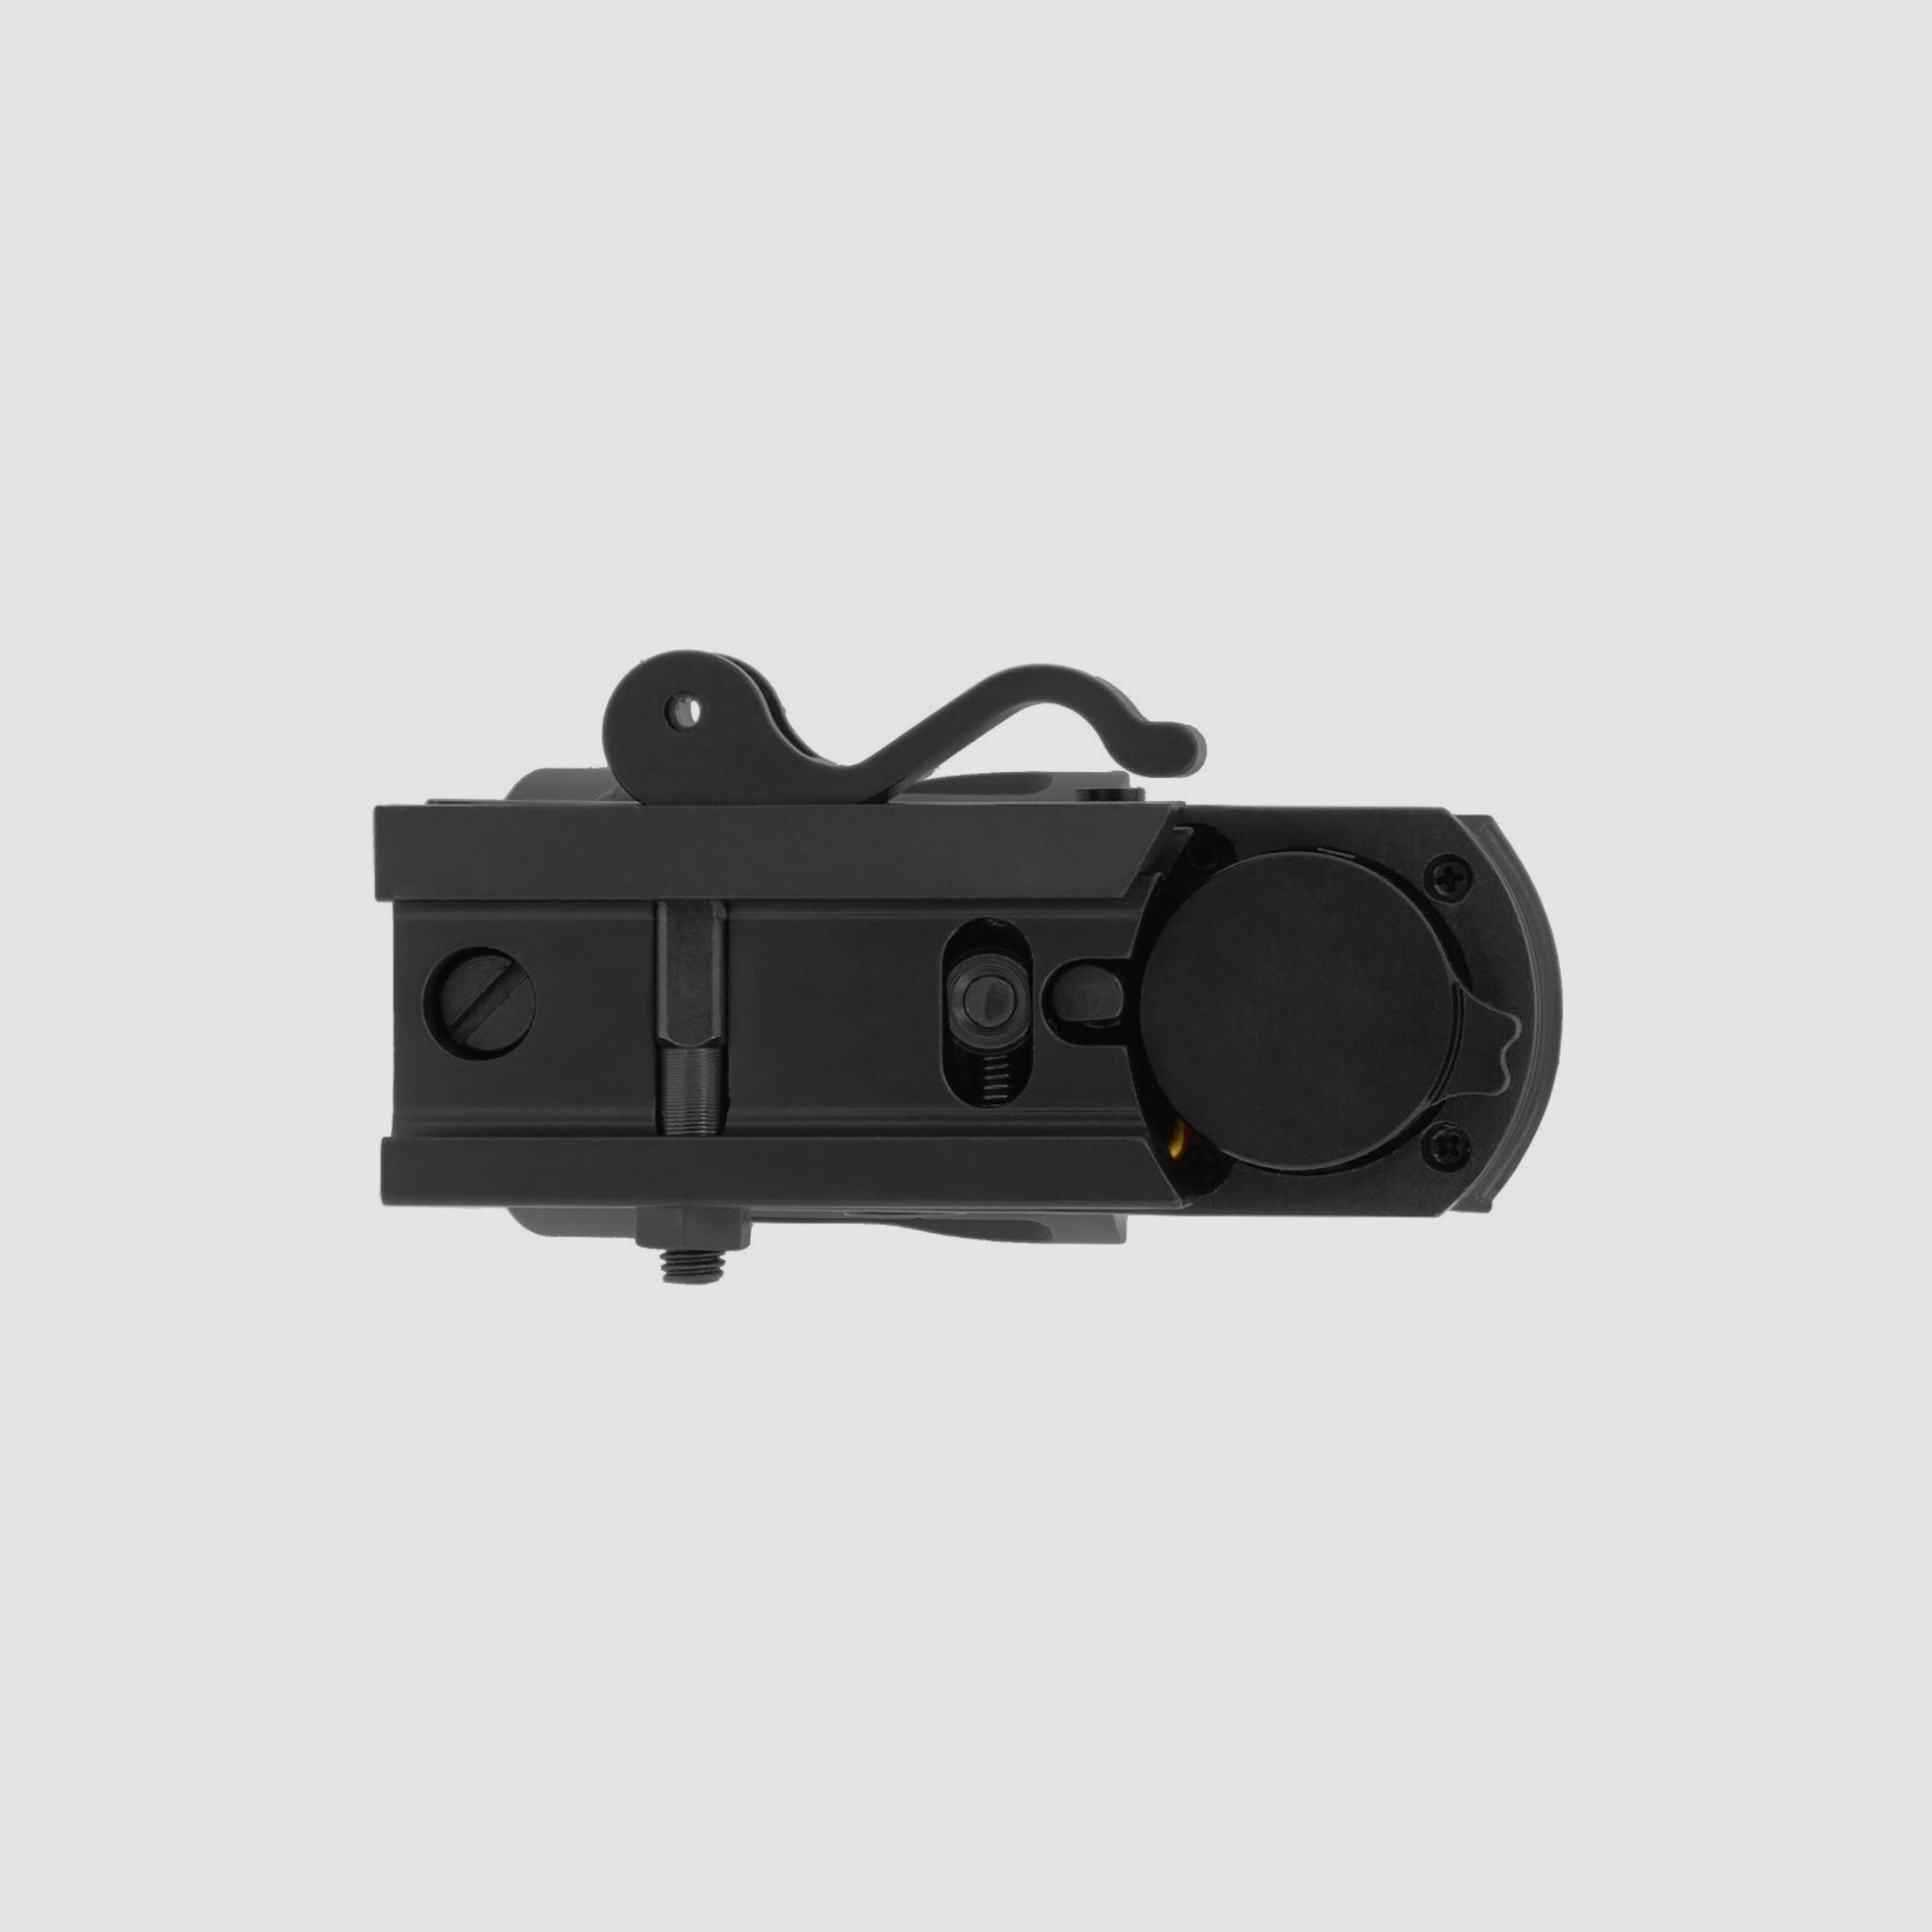 4komma5 HD104QD 1x33 Red Dot / Leuchtpunktvisier mit Weaver-Montage